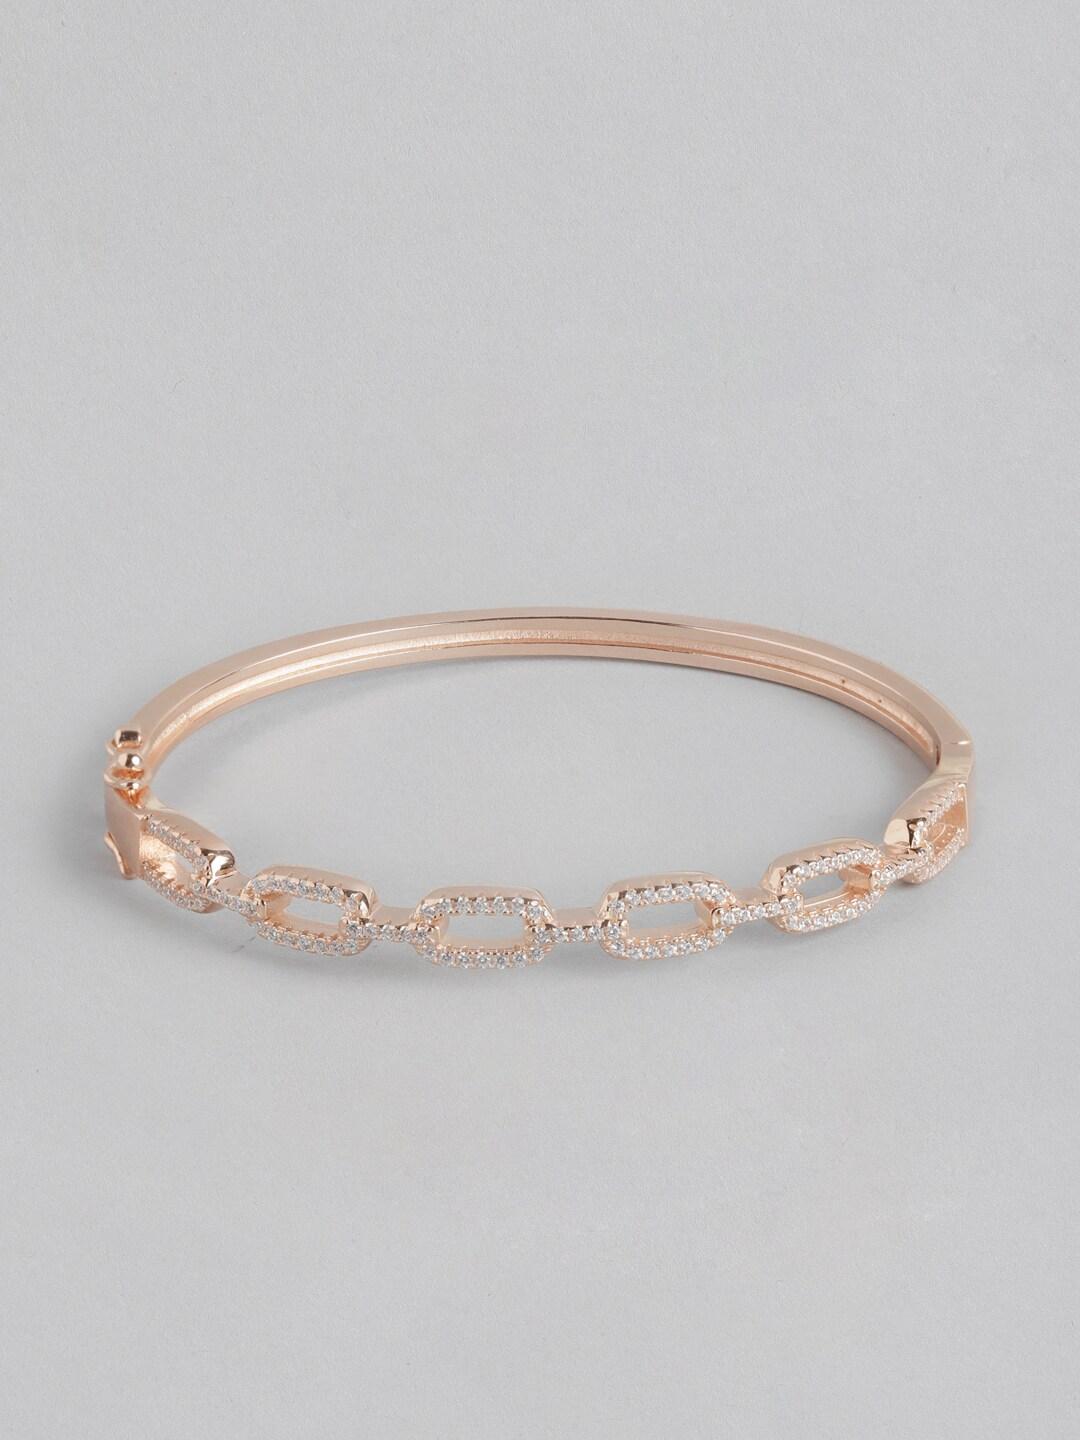 zavya women 925 sterling silver cz-studded rose gold-plated cuff bracelet